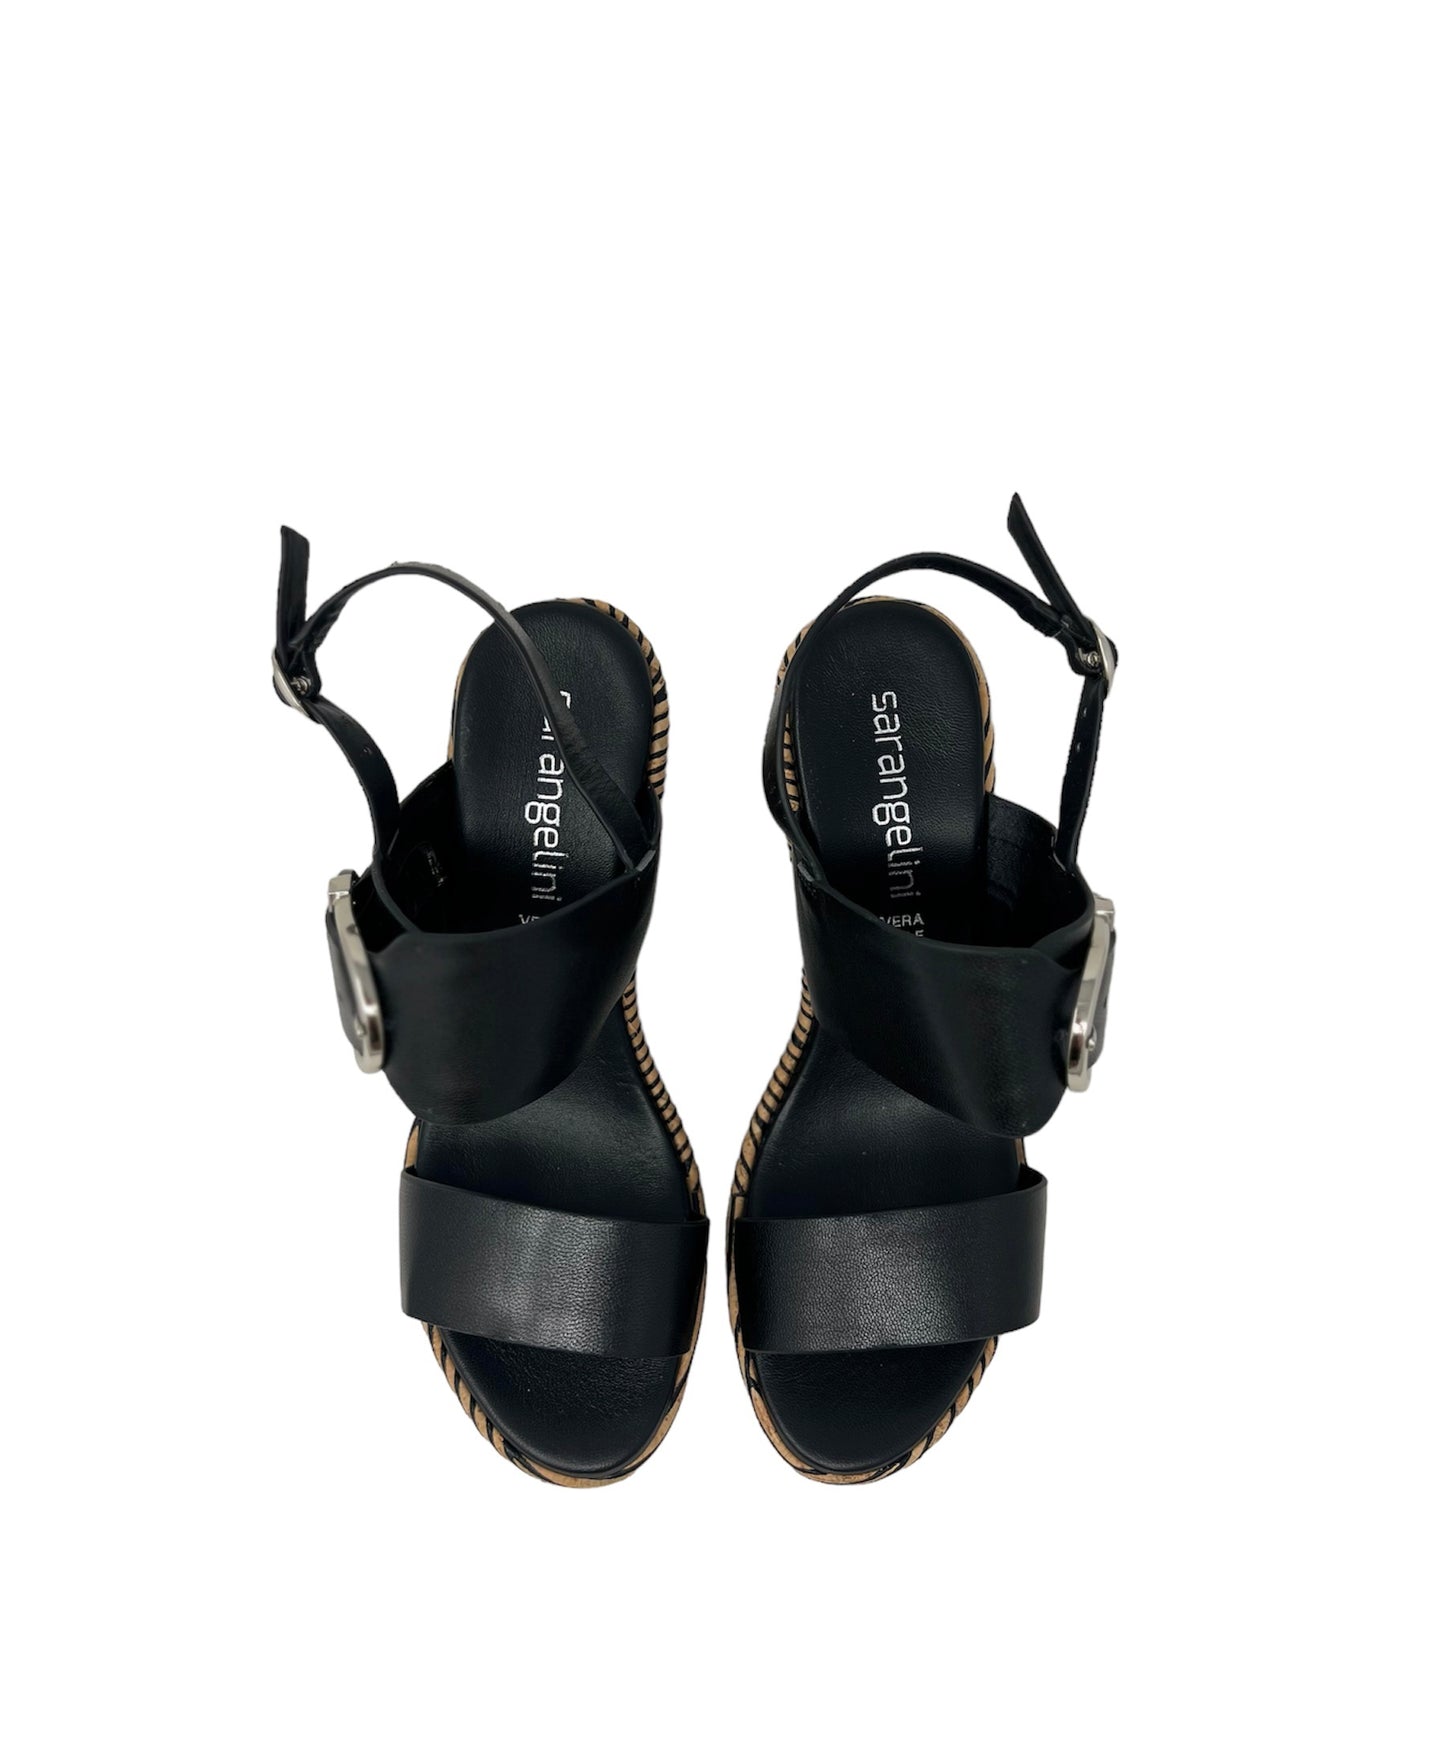 Sandalo zeppa nero con fibbia -52261NE